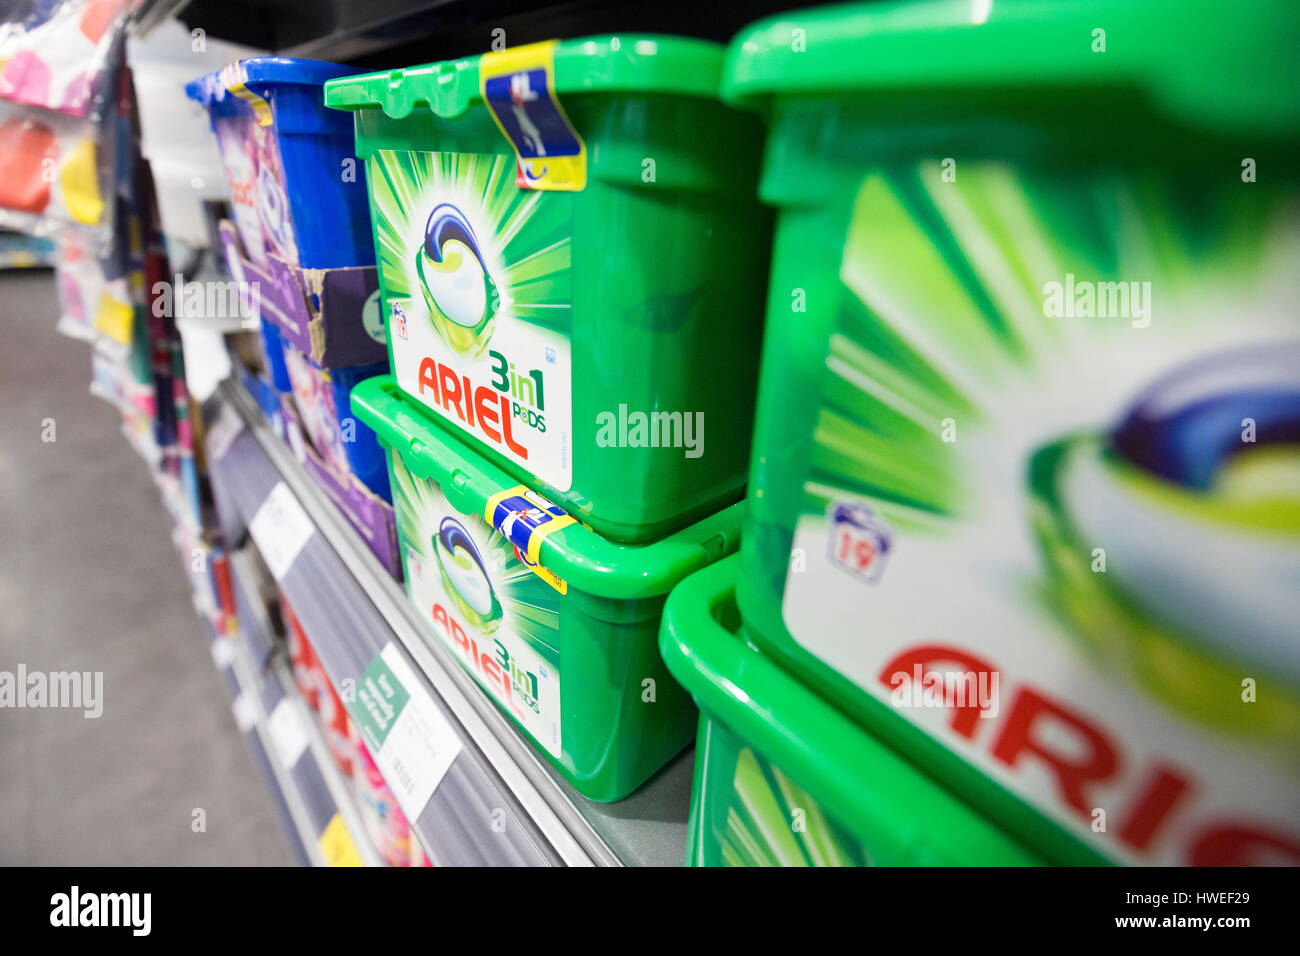 Ariel liquide de lavage en vente dans un supermarché Morrisons Banque D'Images